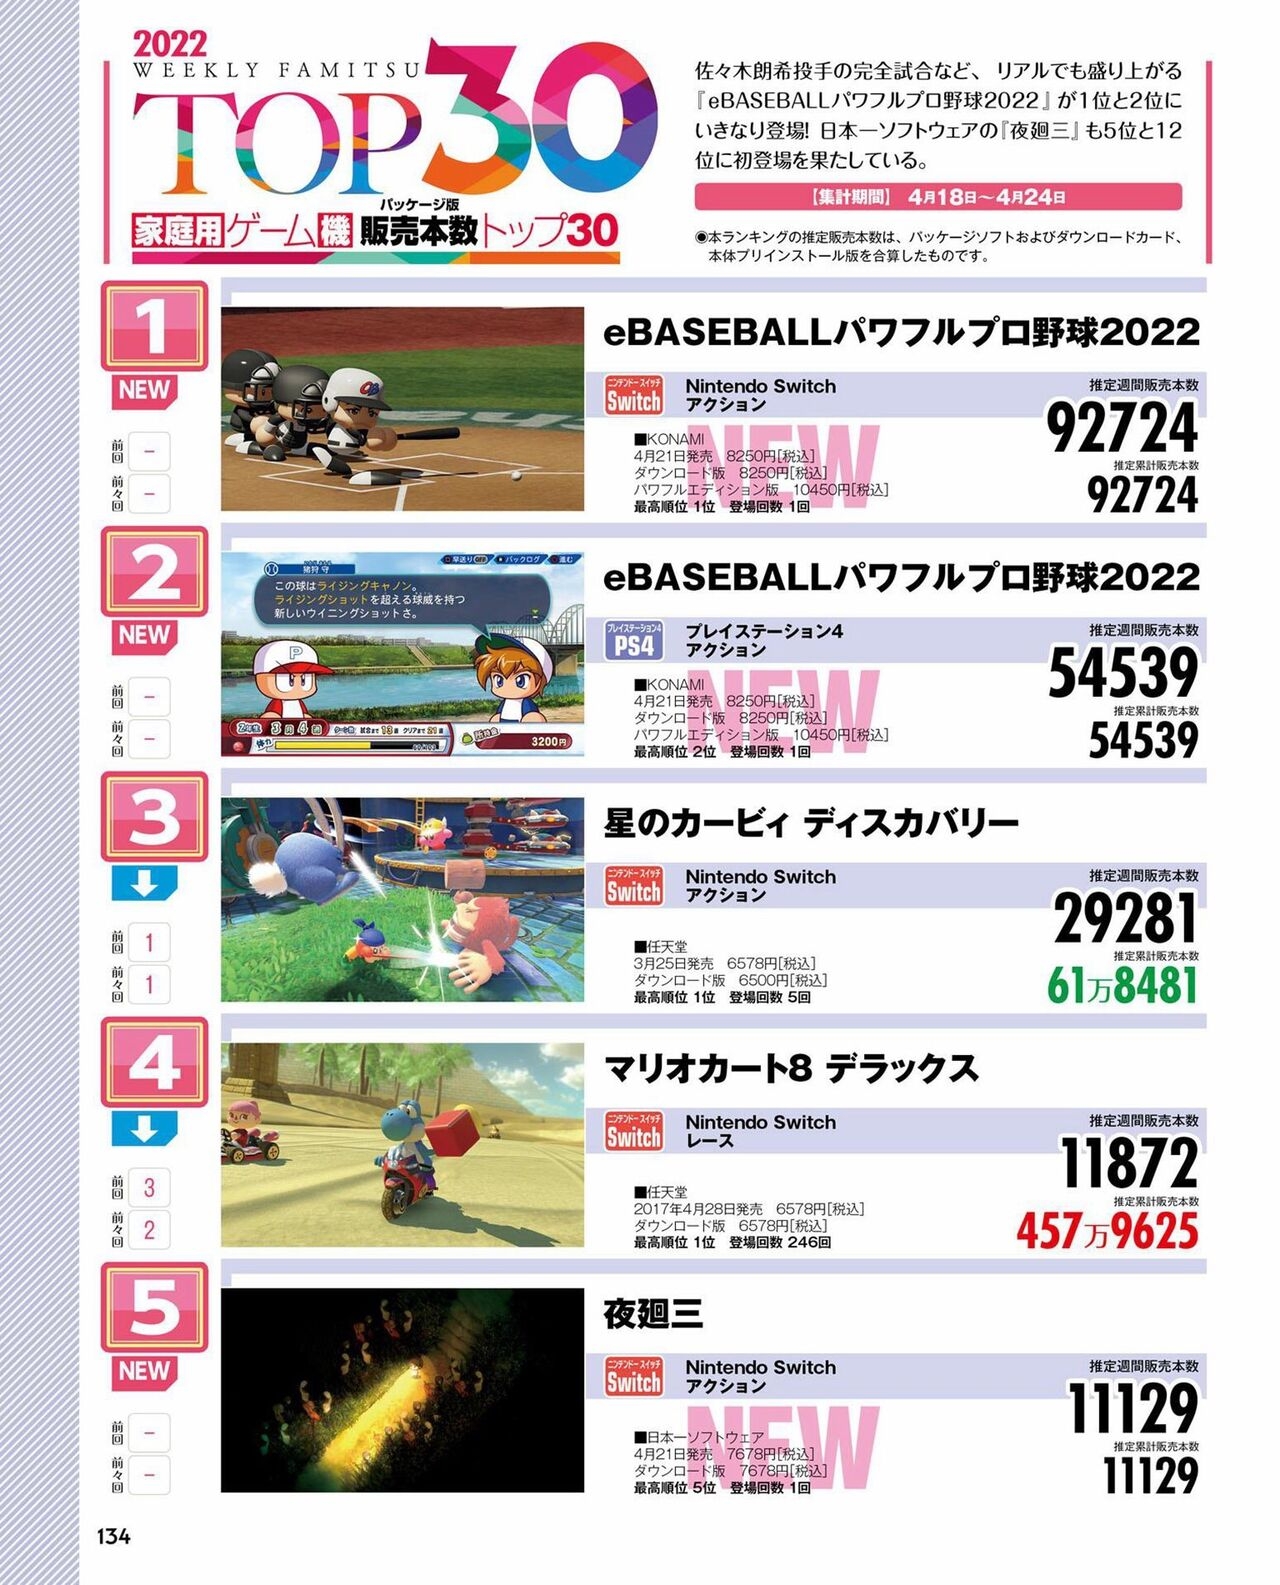 Weekly Famitsu 2022 6 2 133